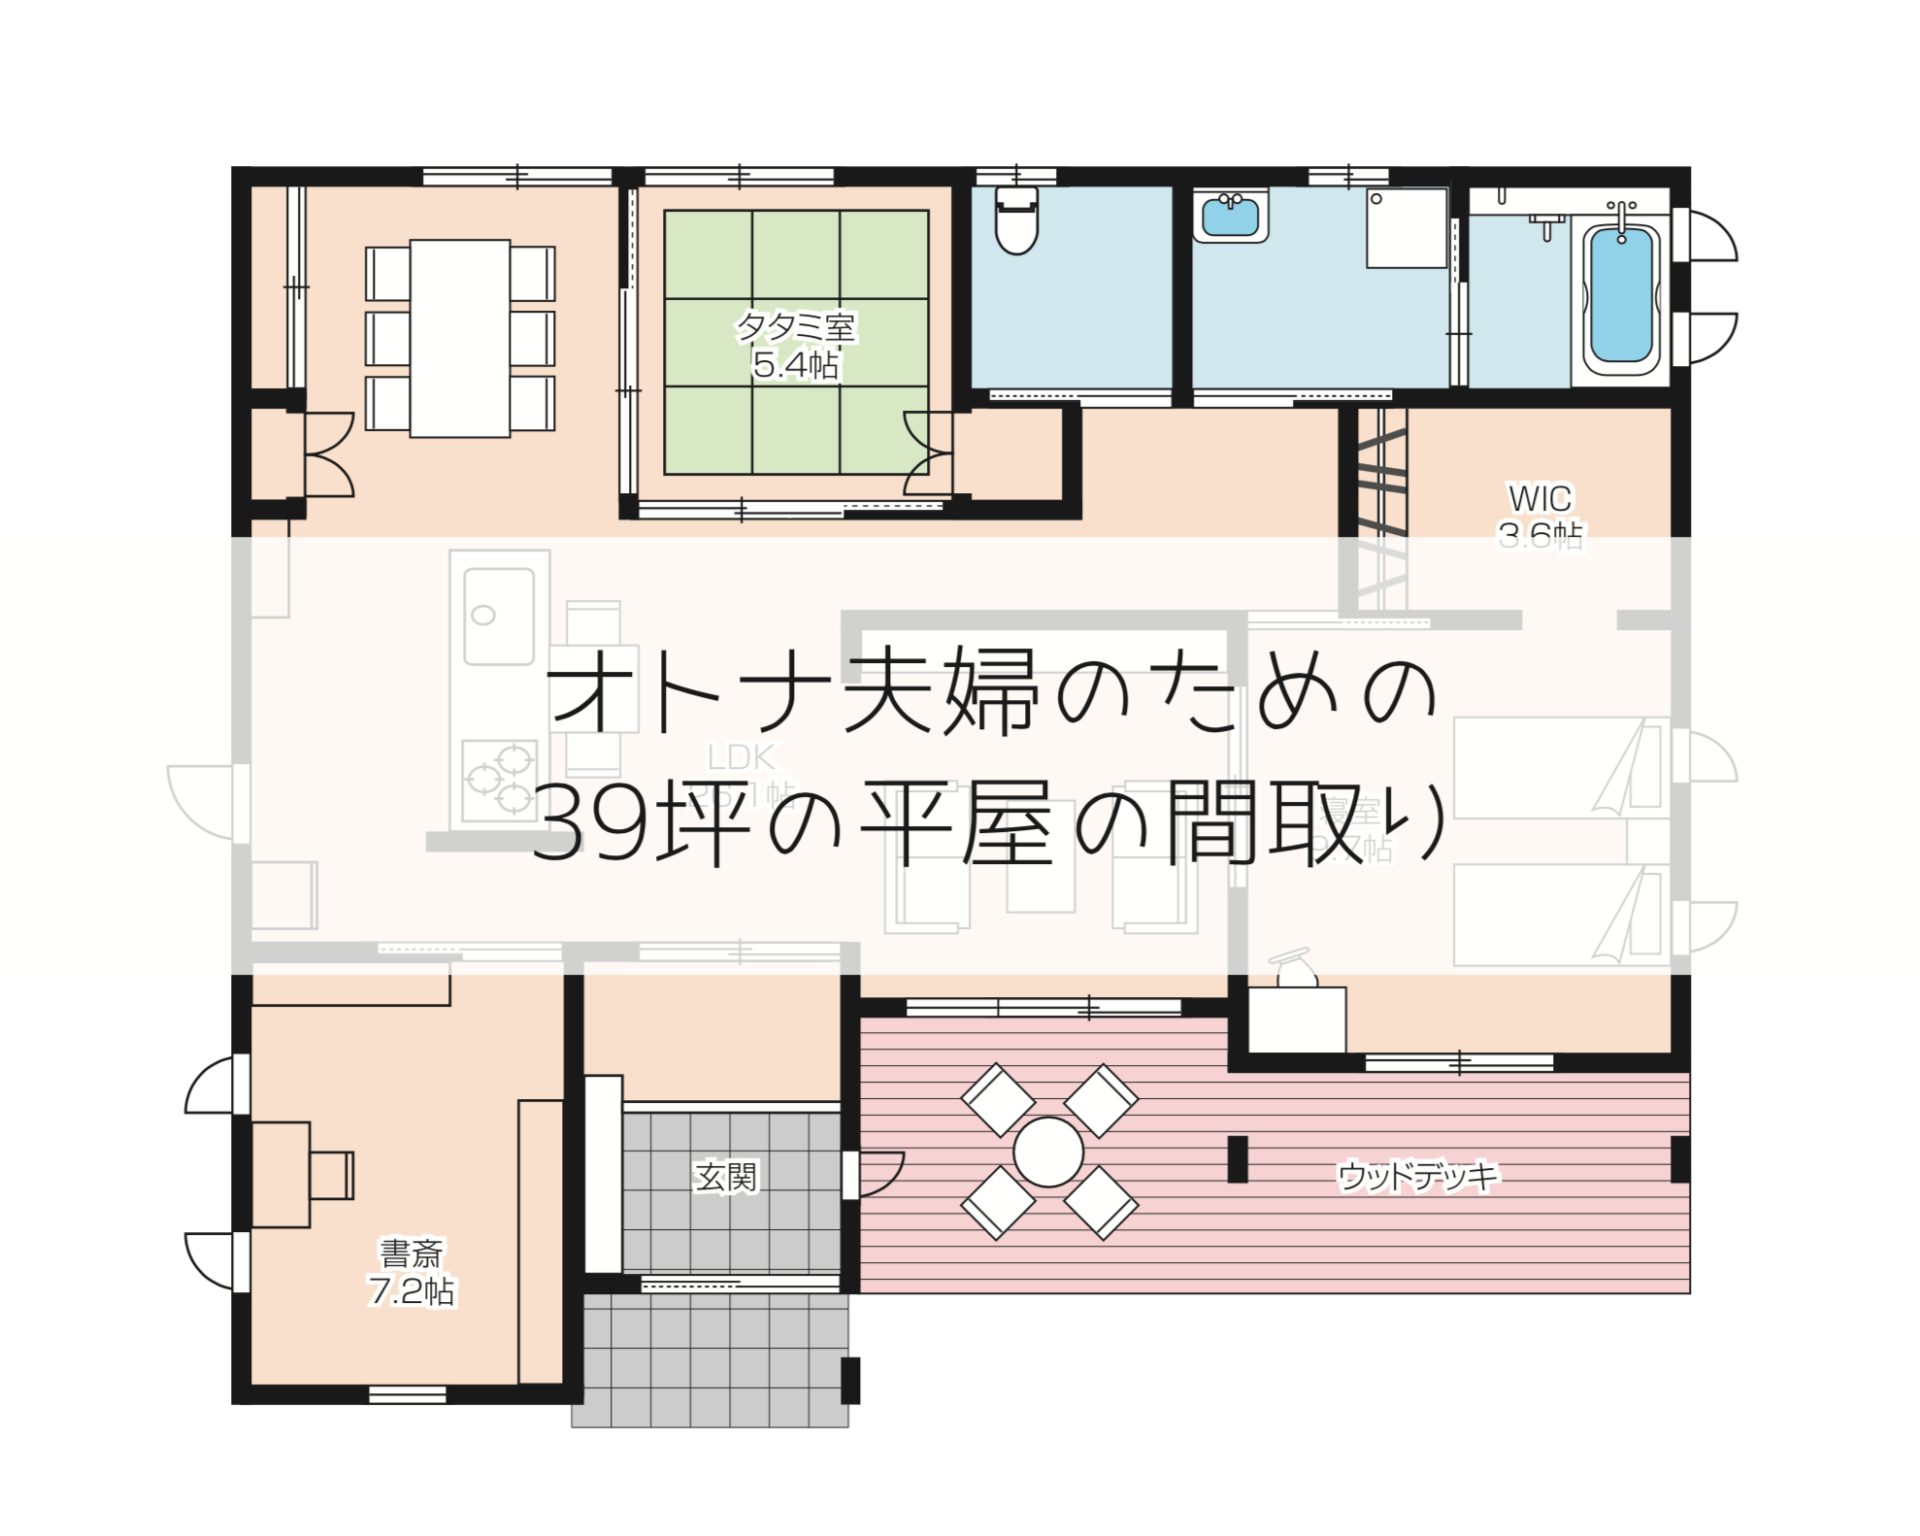 39坪 オトナ夫婦の平屋の間取り実例 兵庫県でマイホームならアイフルホーム